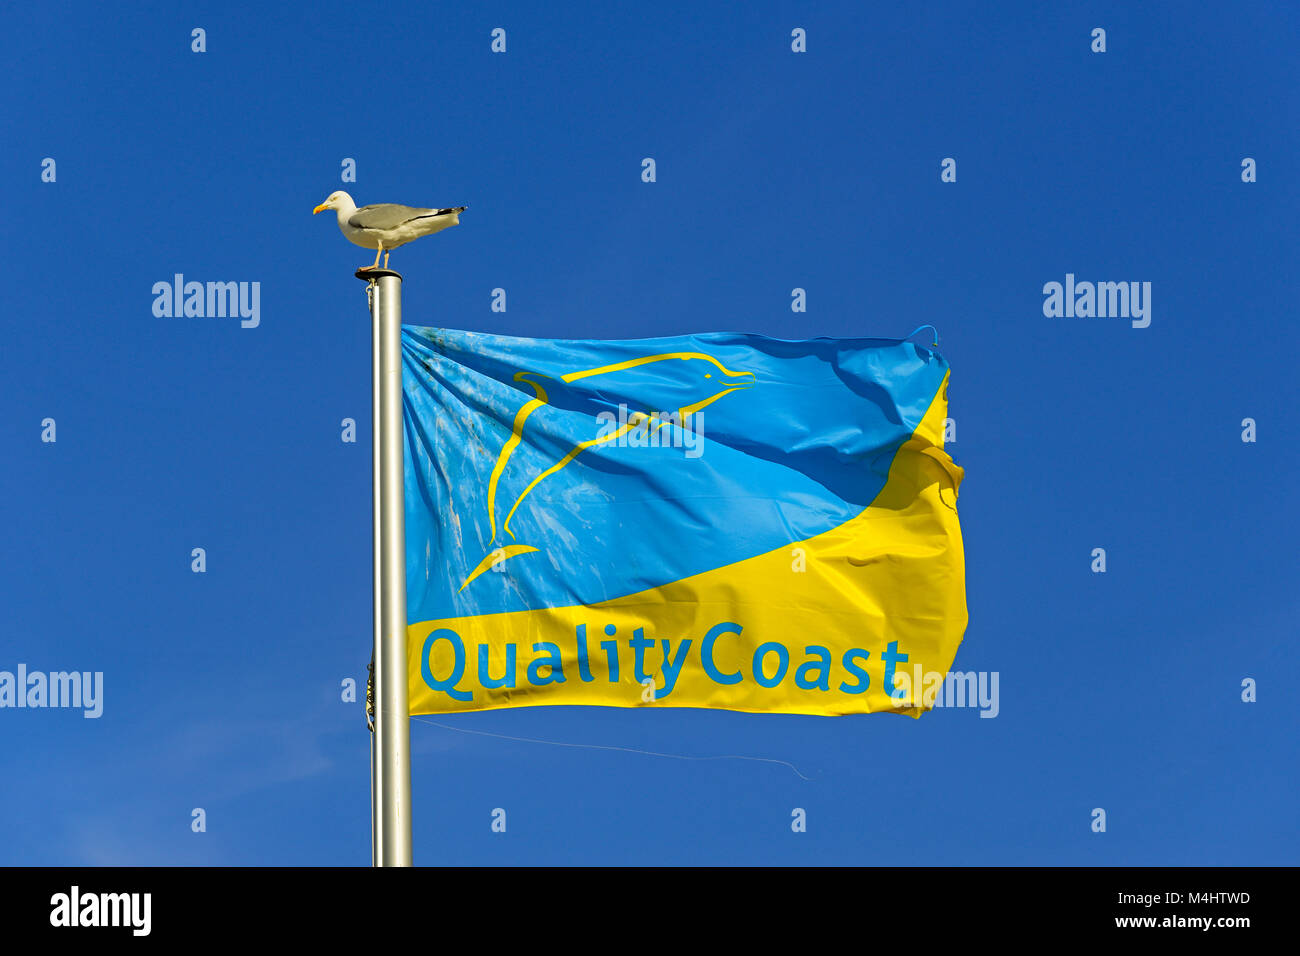 Flagge mit Qualität Coast Award, Europäischer Silbermöwe (Larus argentatus) sitzt auf dem Fahnenmast, Norderney, Ostfriesische Inseln Stockfoto